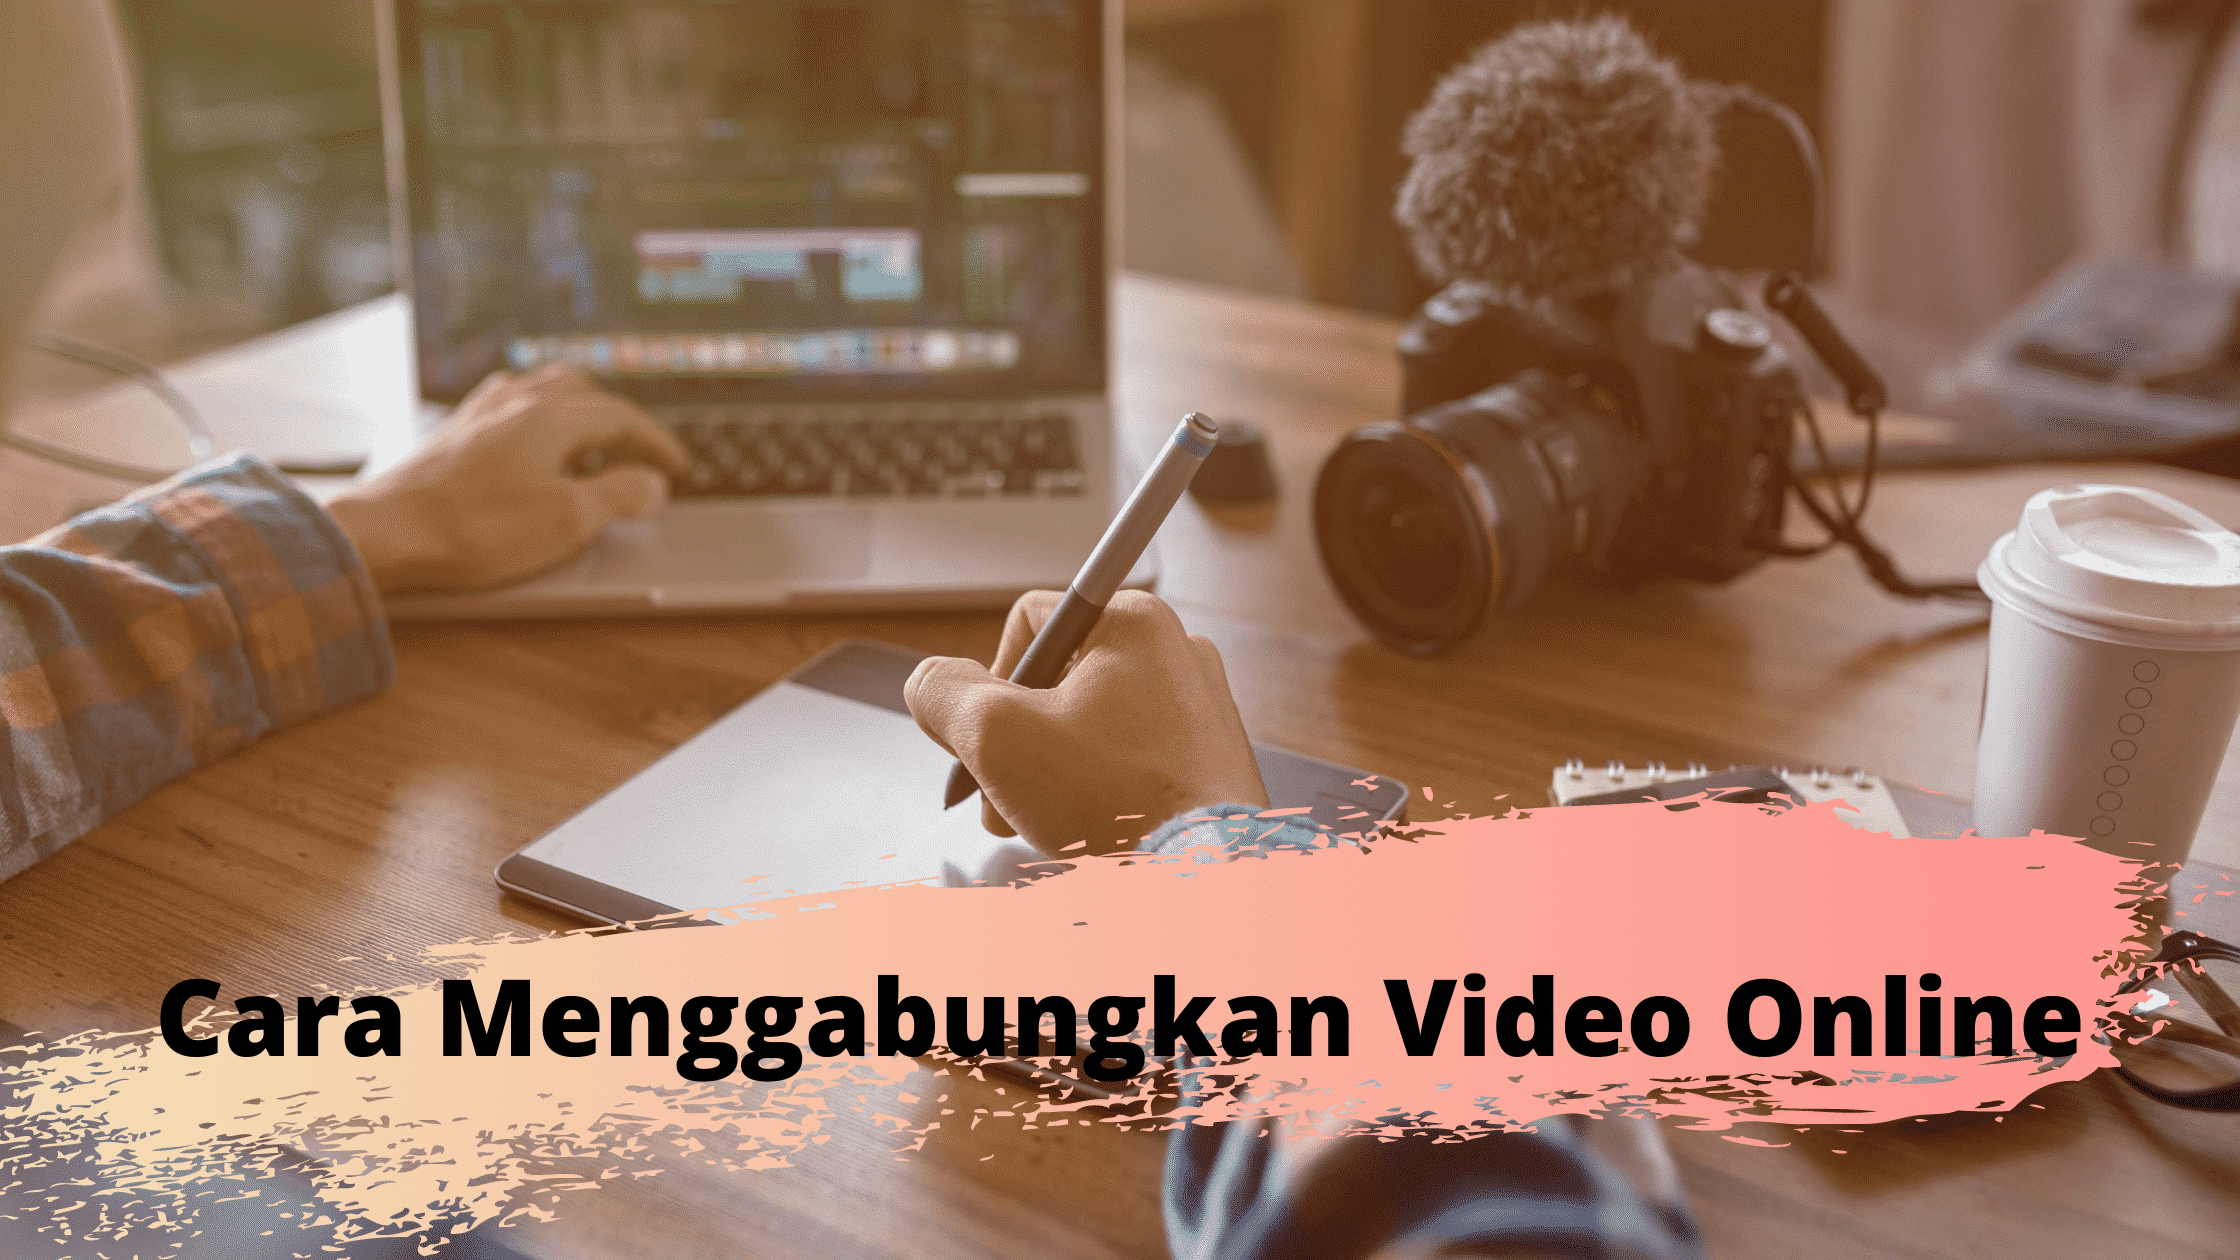 Cara Menggabungkan Video Online